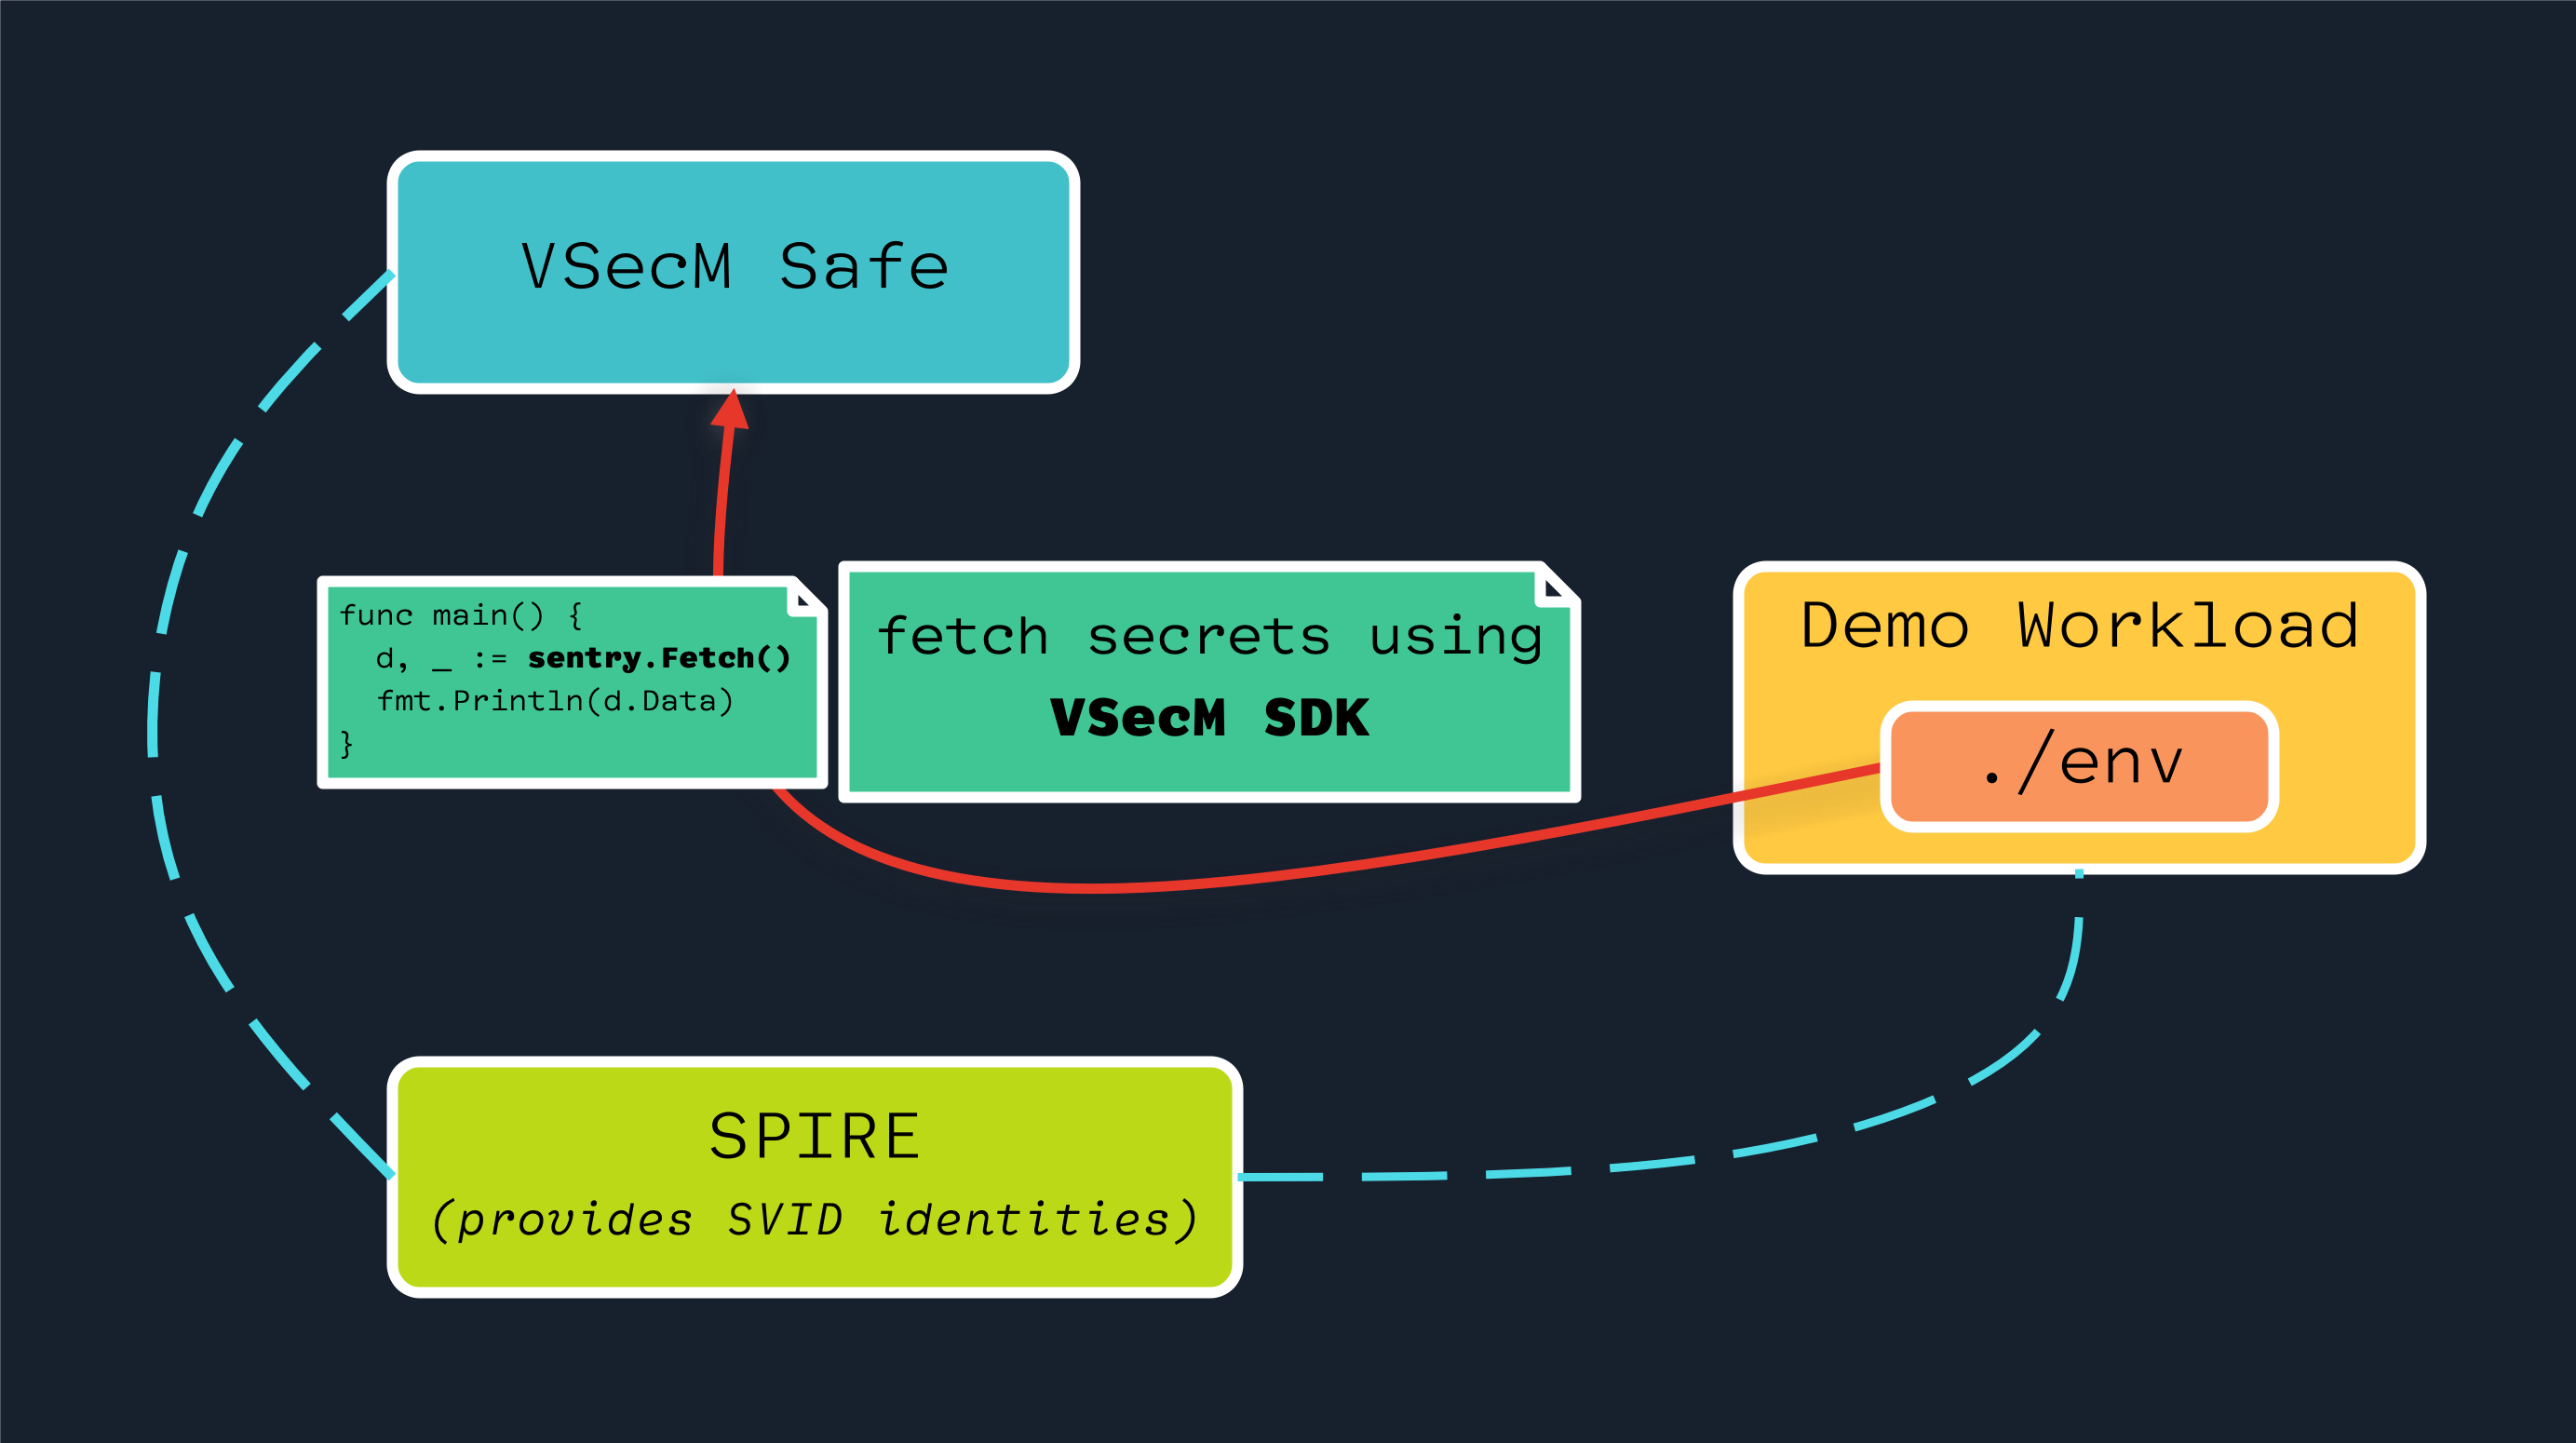 Using VSecM SDK